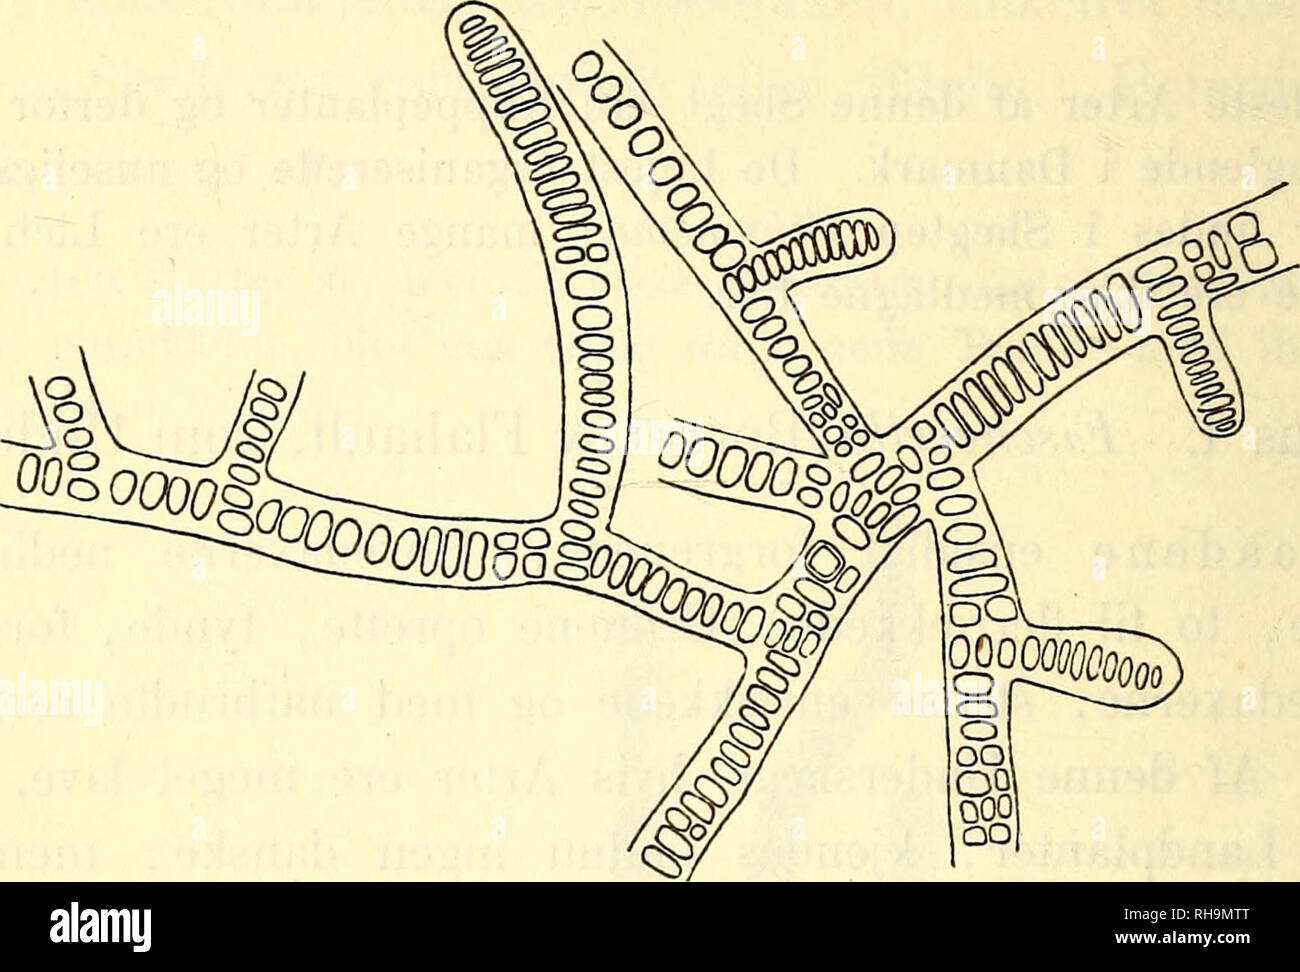 . Botanisk tidsskrift. Botany; Plants; Plants. 408 117. Stigonema ocellatum (Dillw.) Thuret (Hieronymus). Thuret, Essai de classification des Nostochinées, Annal, d. Sc. nat., 6e série, bot., I, p. 380, 1875; Hieronymus, Hedwigia, Bd. XXXIV, p. 158, 1895.. Fig. 38. Stigonema ocellatum (Dillw.) Thuret (Hieronymus.) Brudstykke af en Traad med Grene af 1ste og 2den Orden. En enkelt Heterocyst tilstede, ca. 66 : 1. T hall us tueformet eller pudeformet, filtet, smudsig oliven- farvet eller blaagrønt. Traadene oftest oprette med nedliggende Basis, uregelmæssigt forgrenede, 20—45 (sj. 50) fi tykke, i Stock Photo